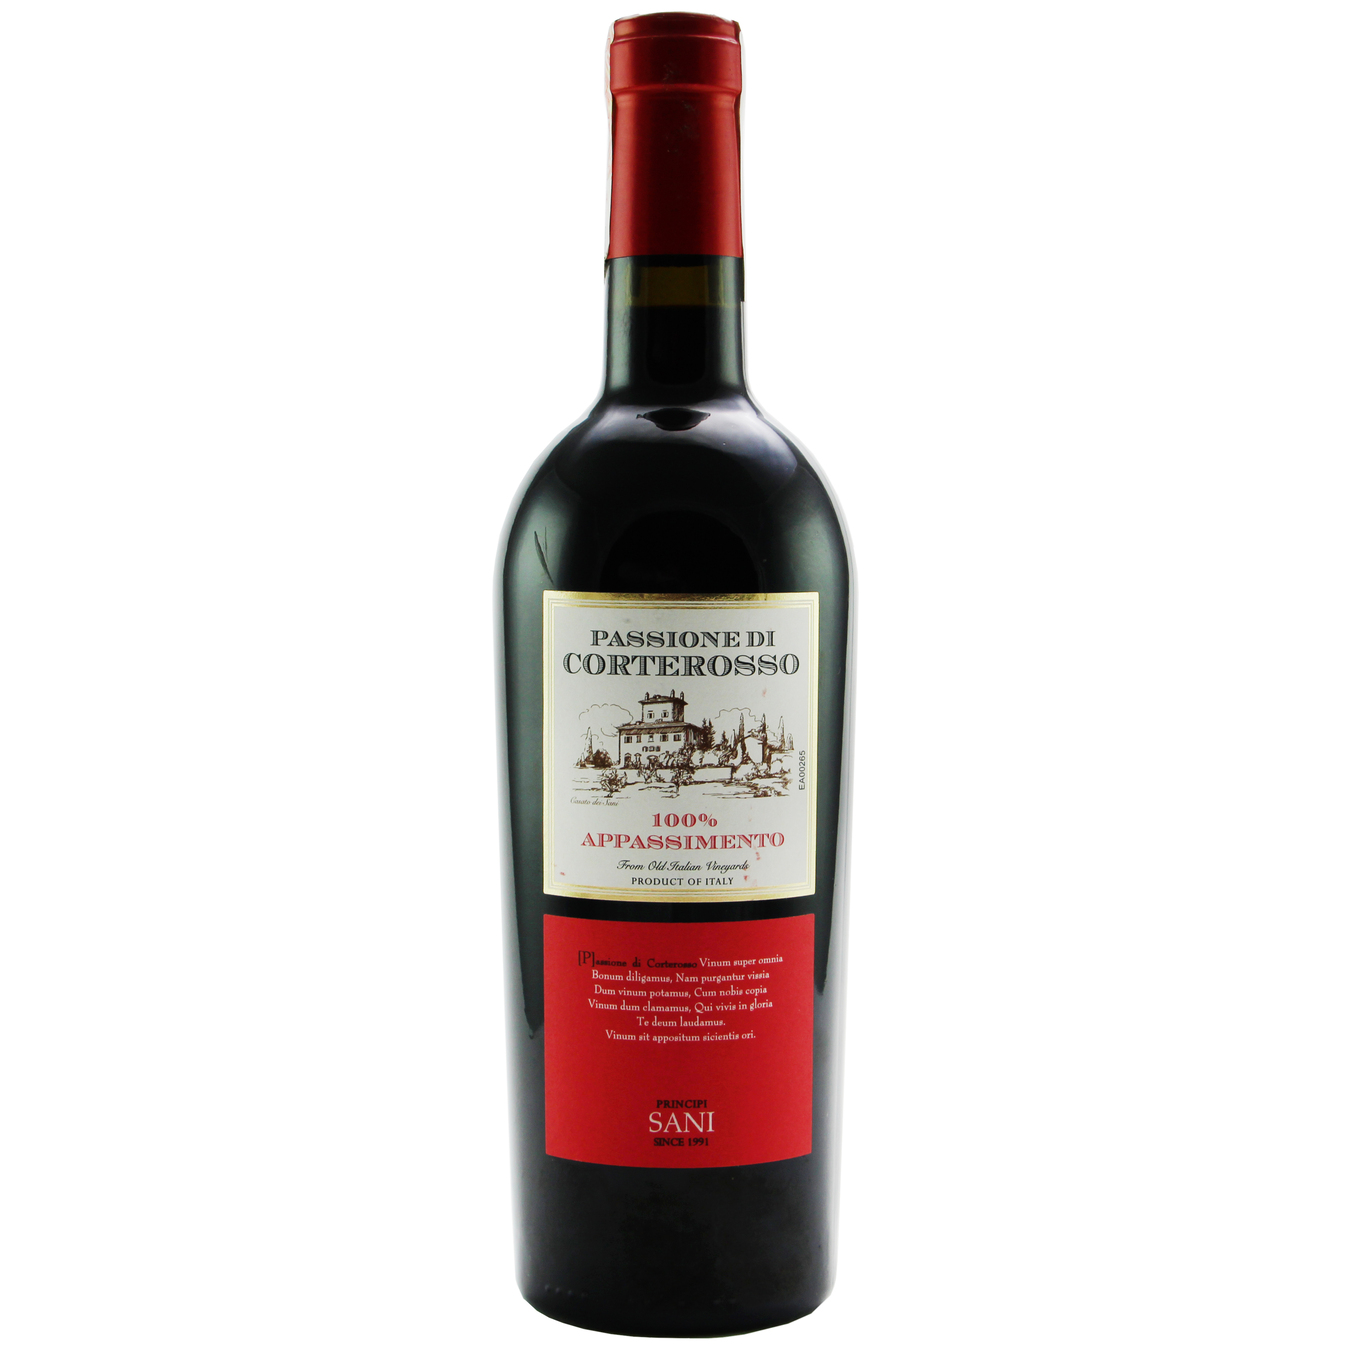 Carlos Sani Passione di Corterosso 100% Appassimento Salento IGT 14% red dry wine 14% 0,75l